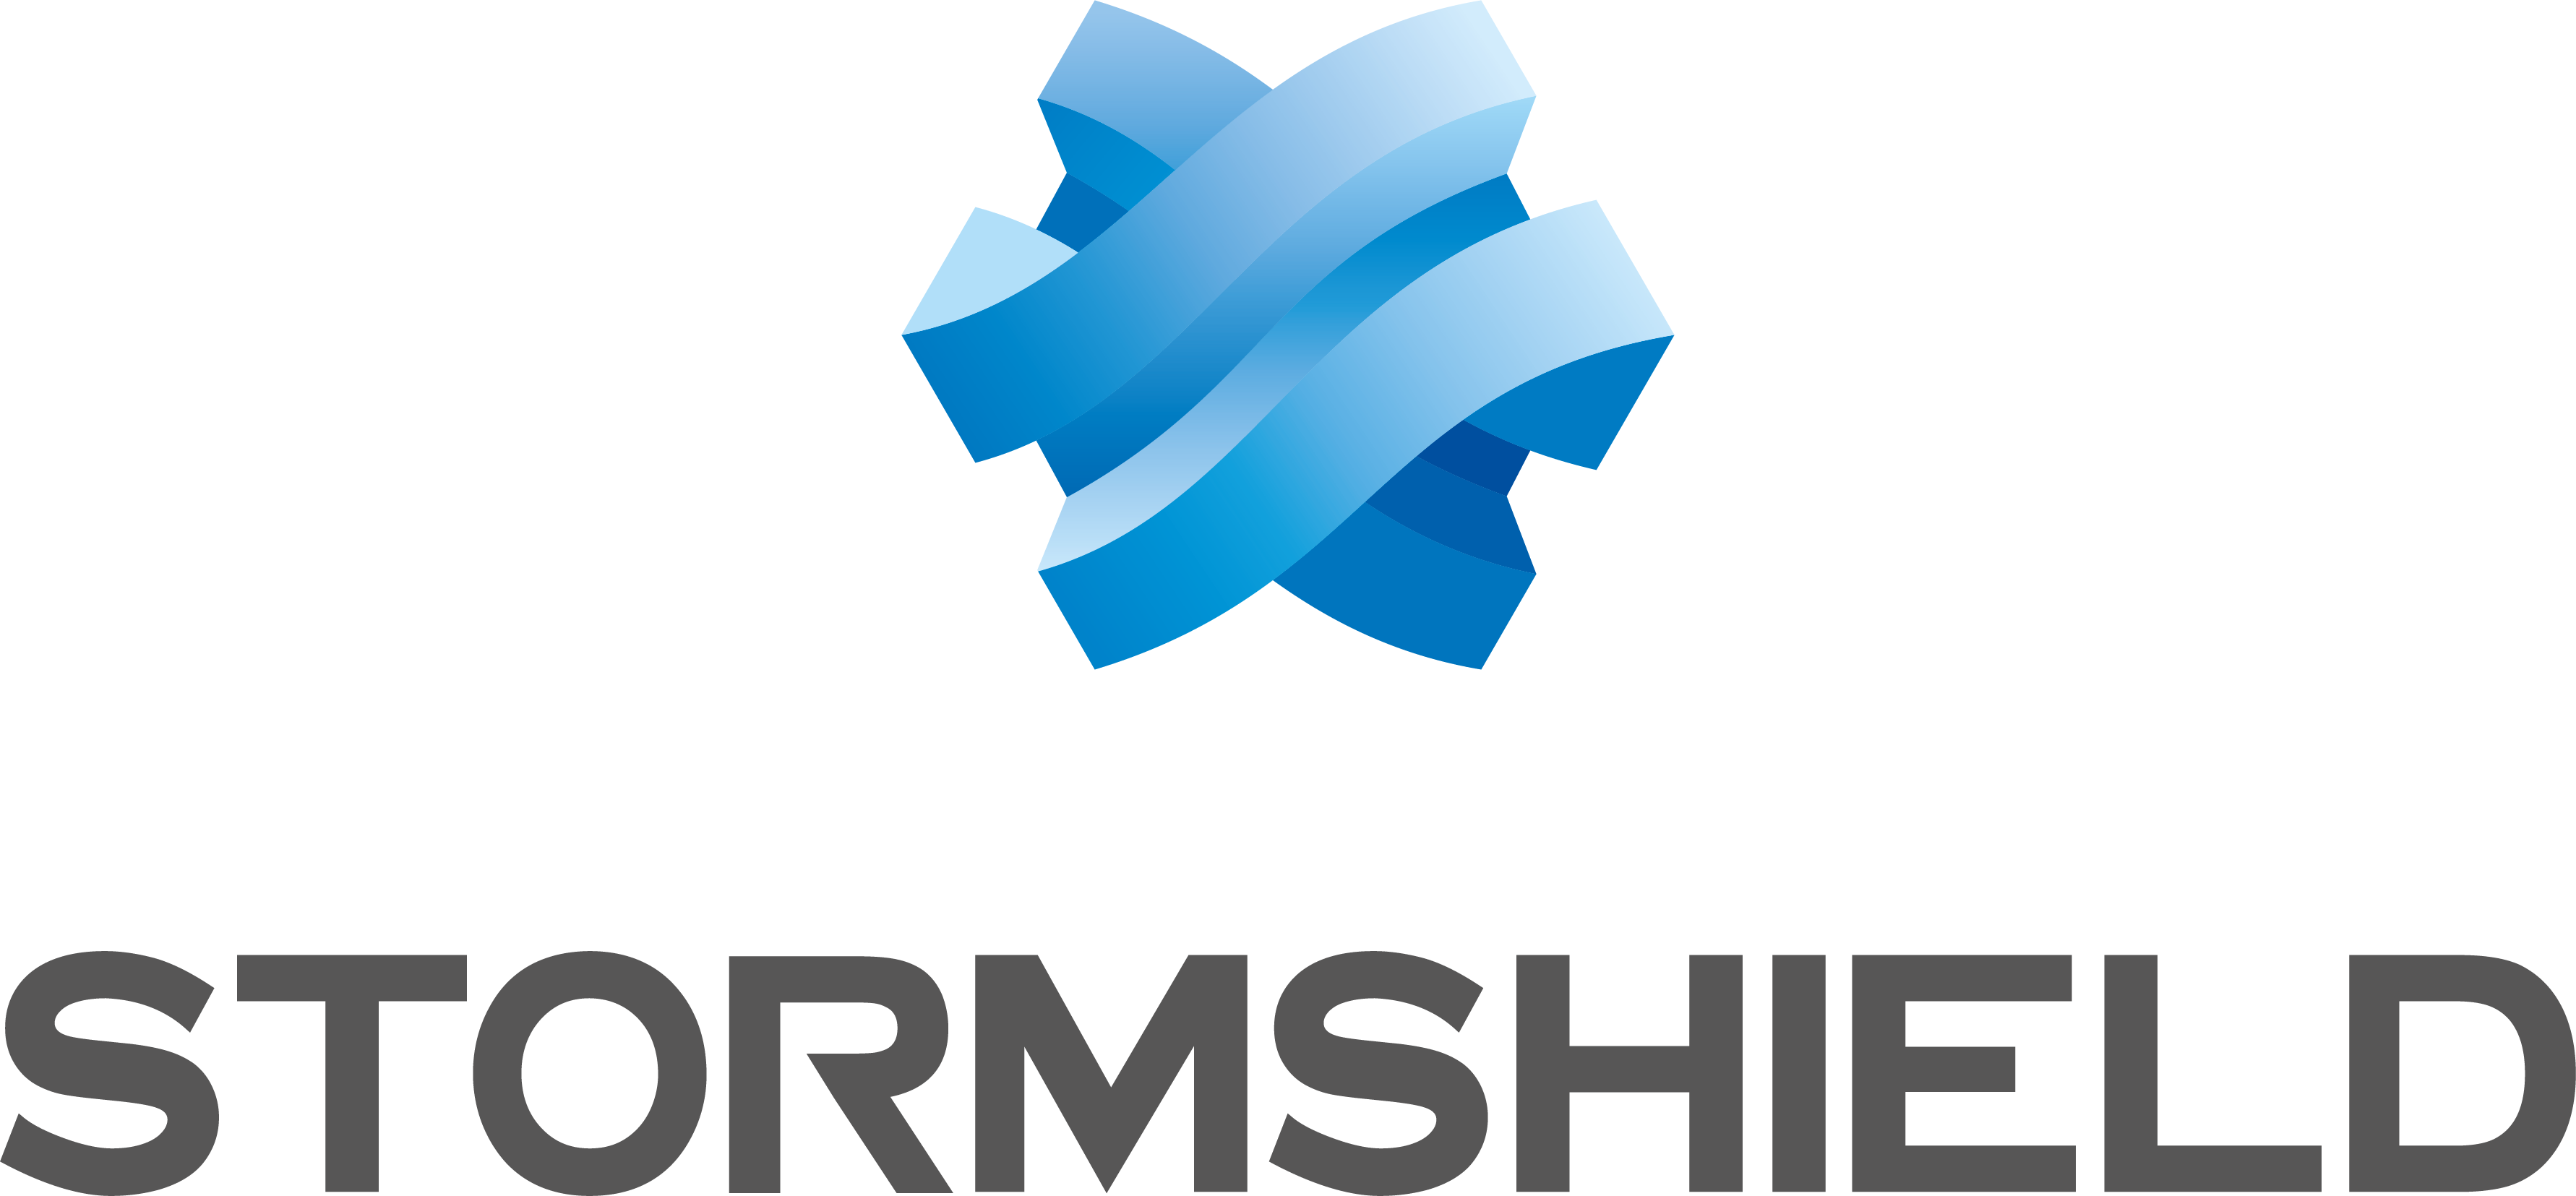 Stormshield-Logo-CMYK.png